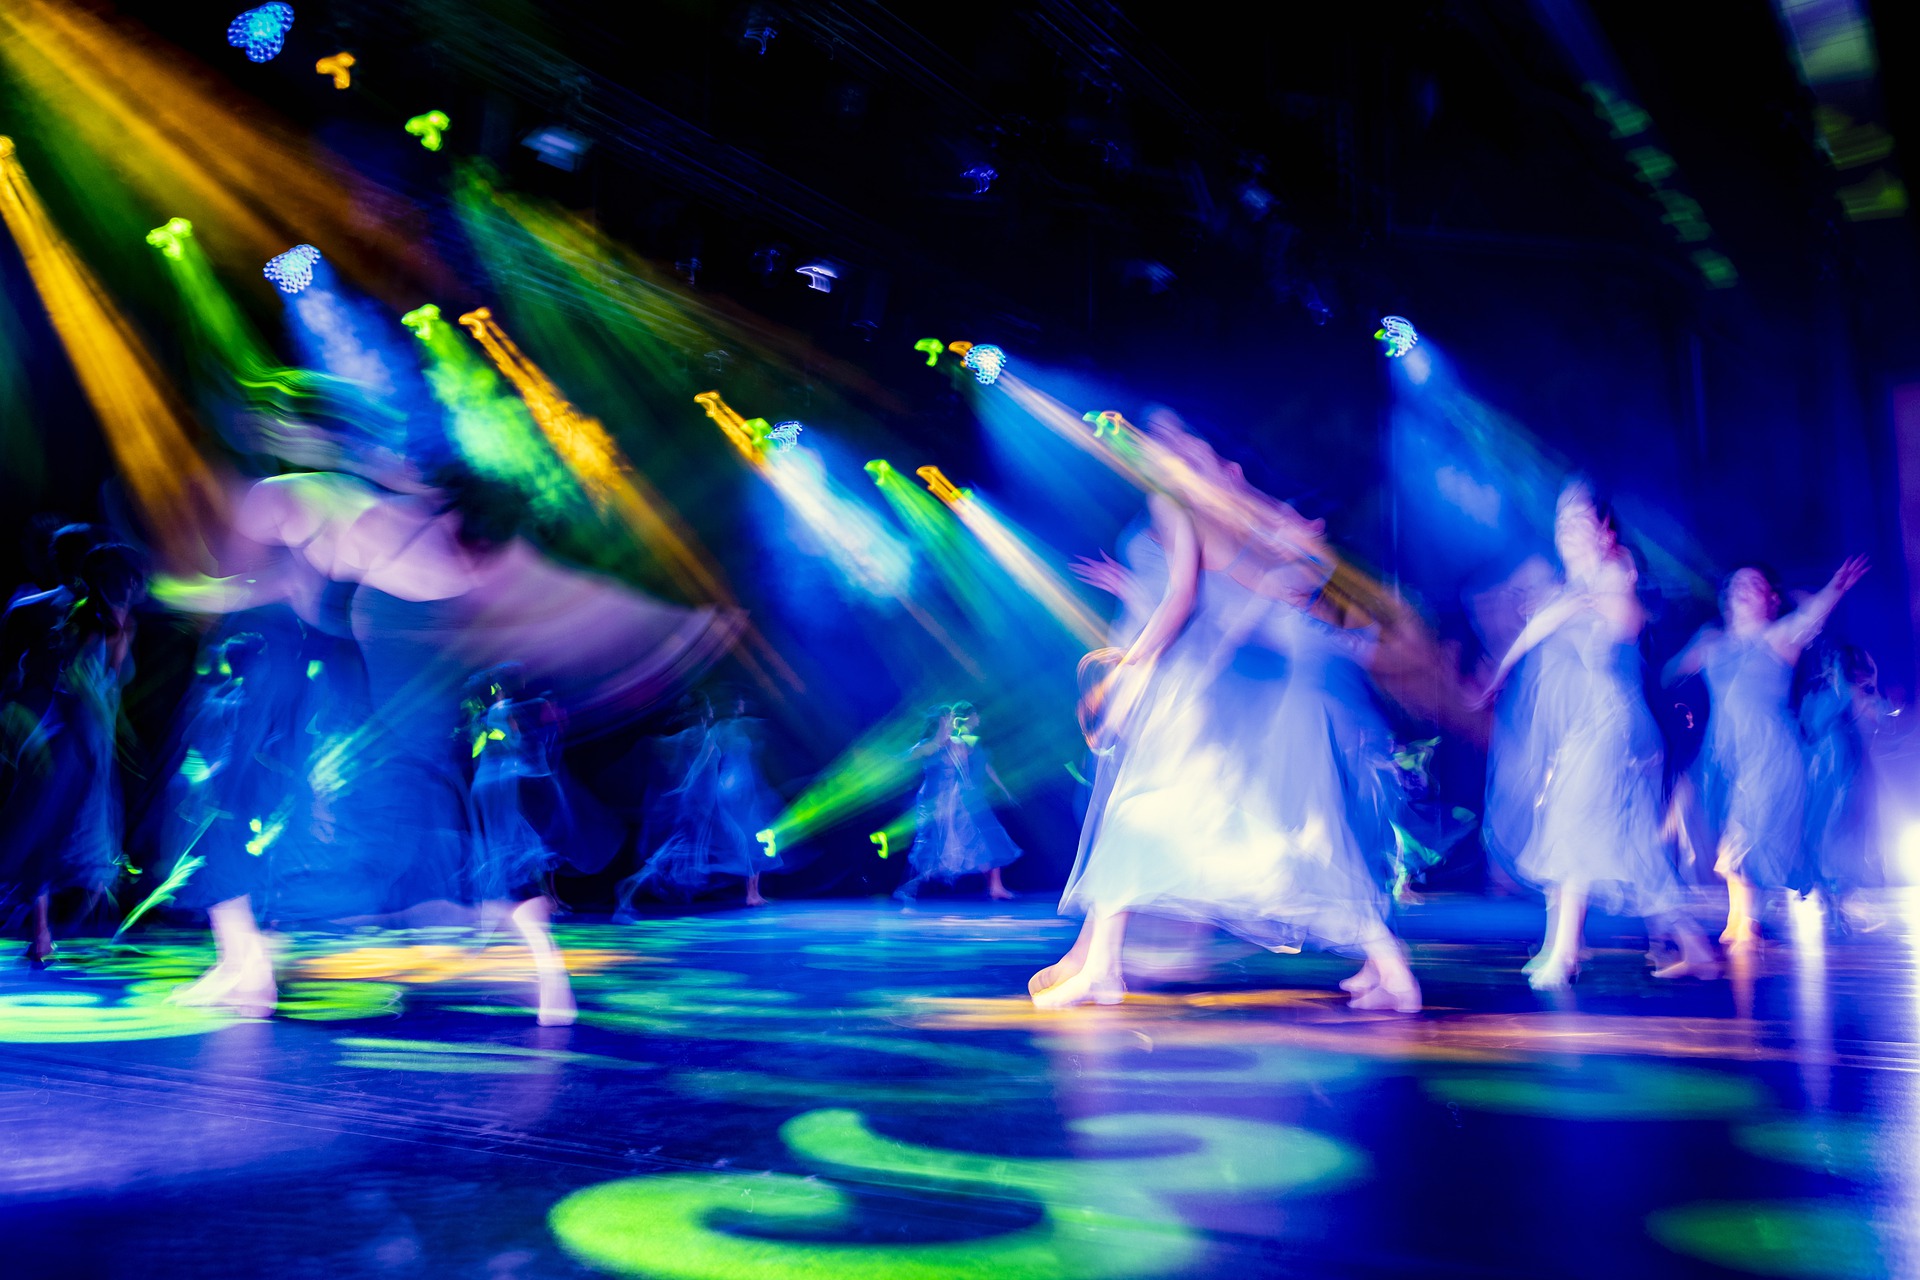 Tanzdarstellung auf Bühne in blauem Licht - Bild verfremdet